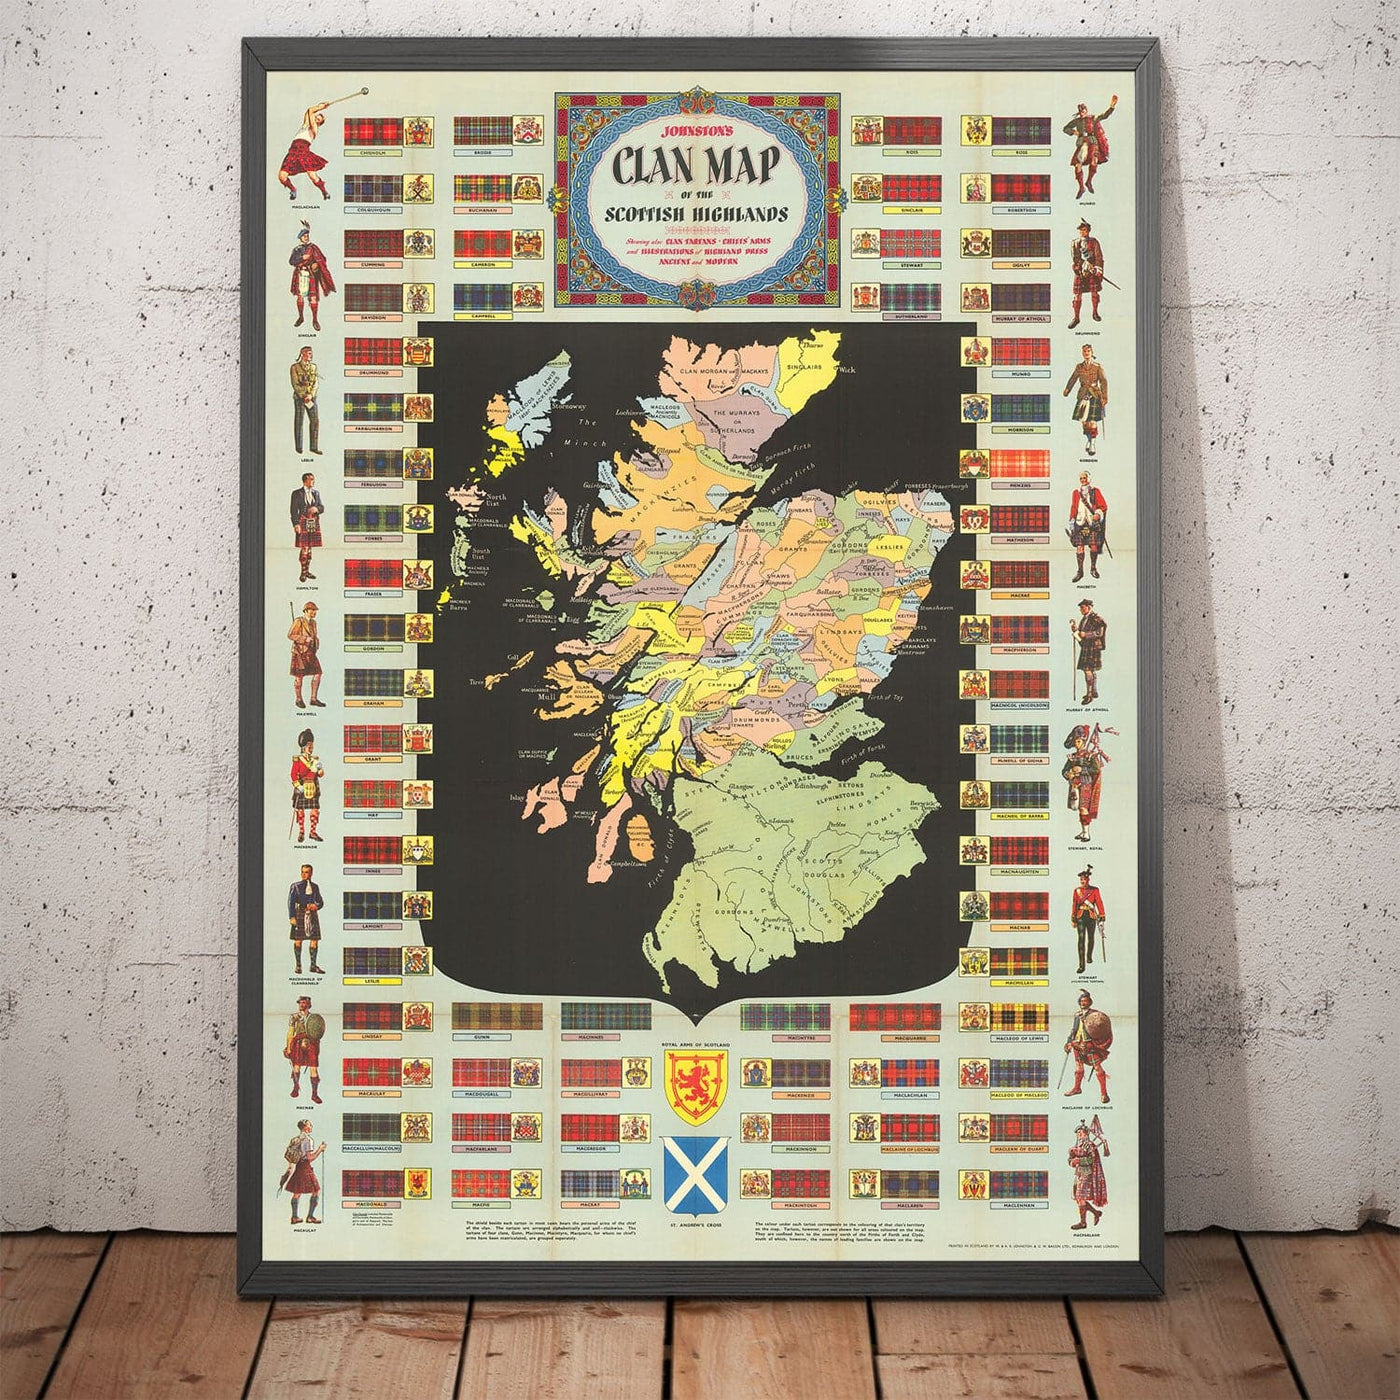 Ancienne carte de l'Ecosse Clans et Tartans - Tableau écossais de Johnston's Highlands & Basslands